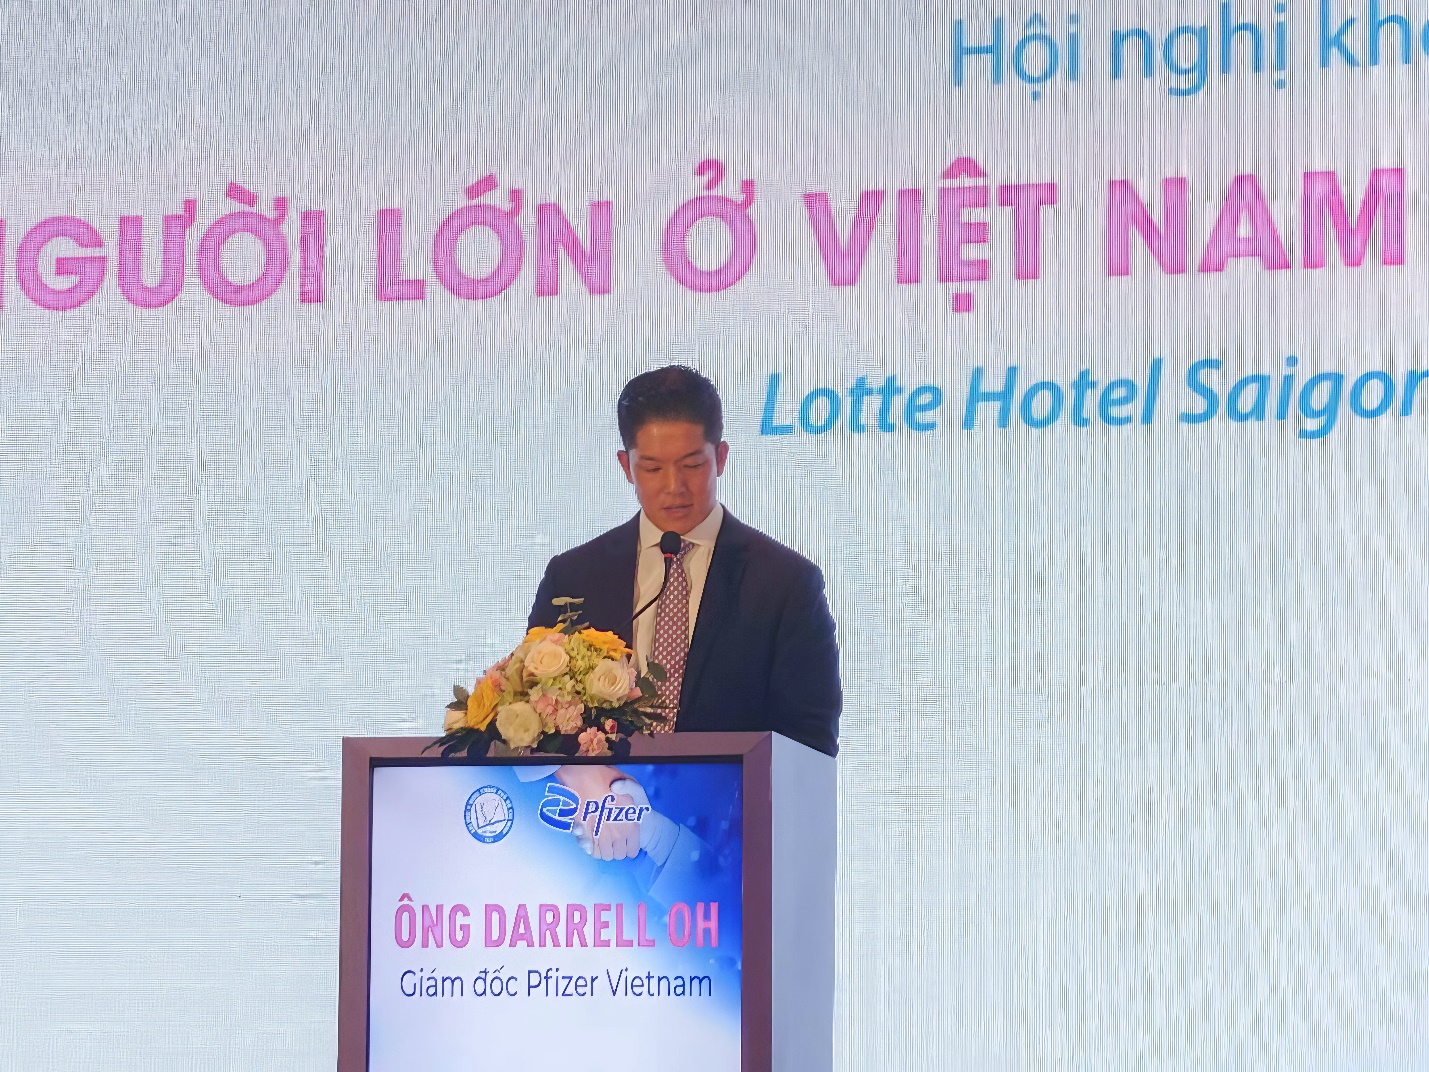 Ông Darrell Oh - Tổng giám đốc Công ty TNHH Pfizer Việt Nam - chia sẻ về những nỗ lực của Pfizer tại chuỗi hội thảo